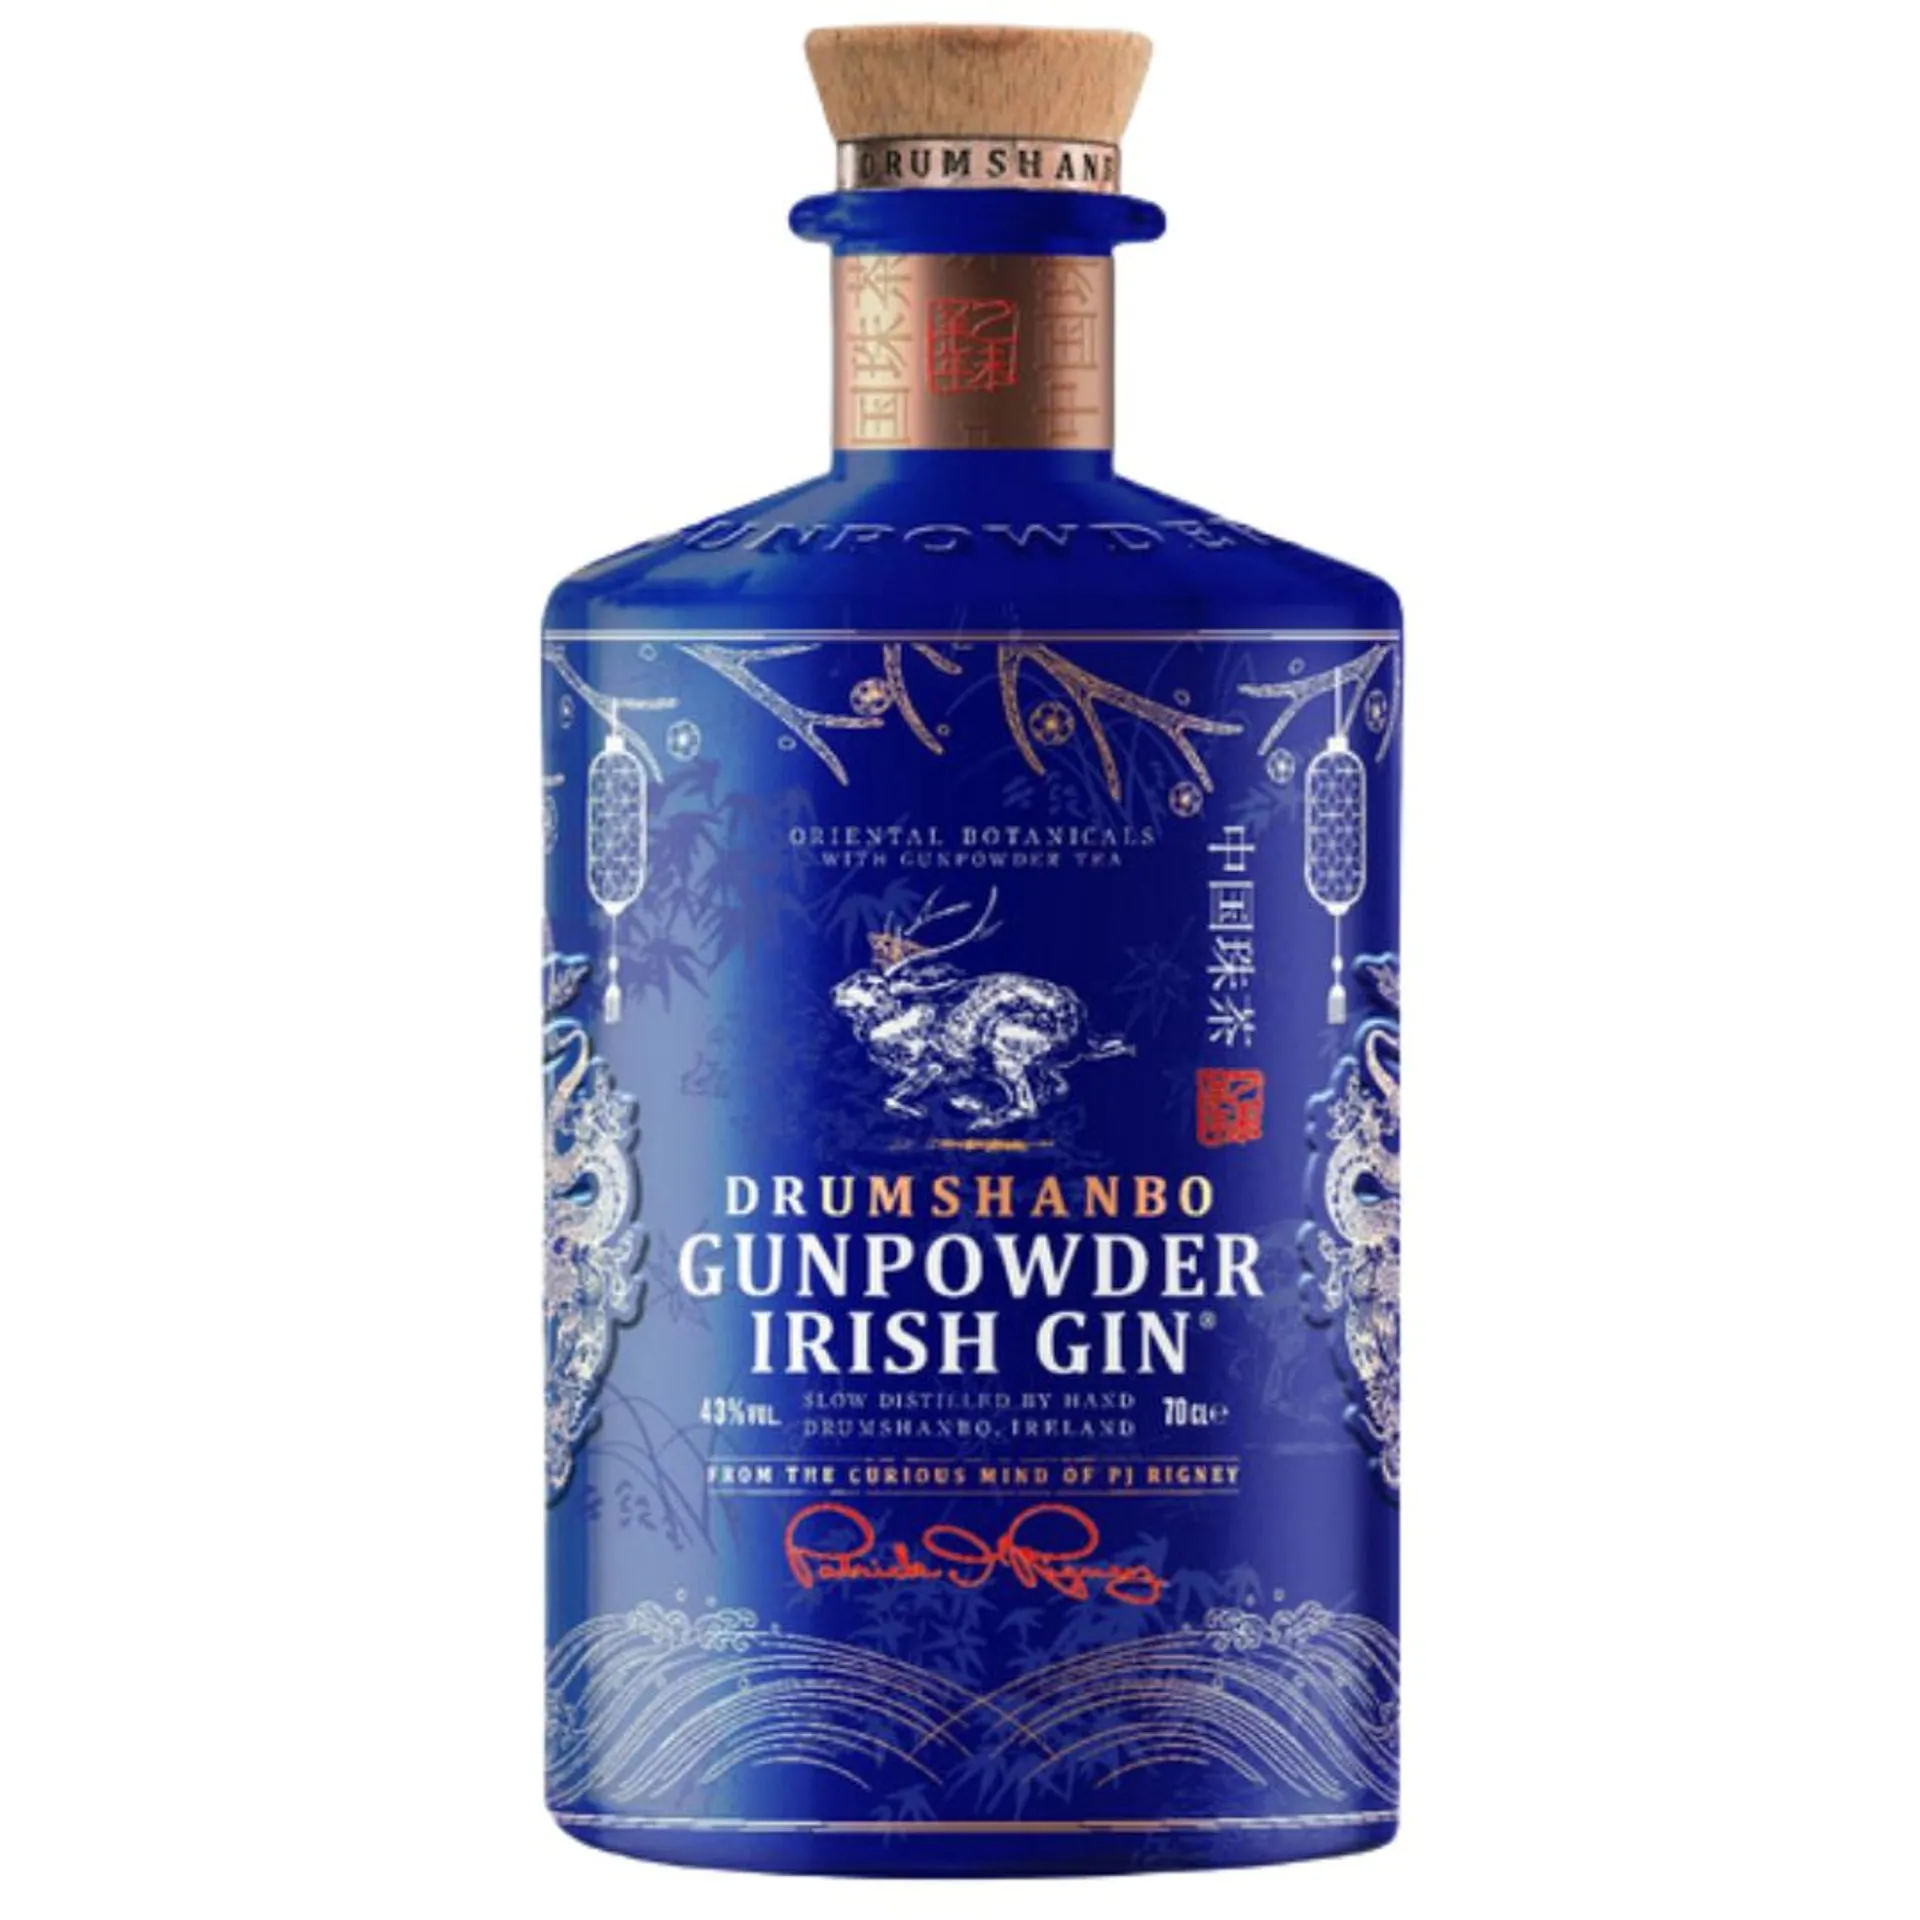 Drumshanbo Gunpowder Irish Gin Dragon Edition 43% ABV